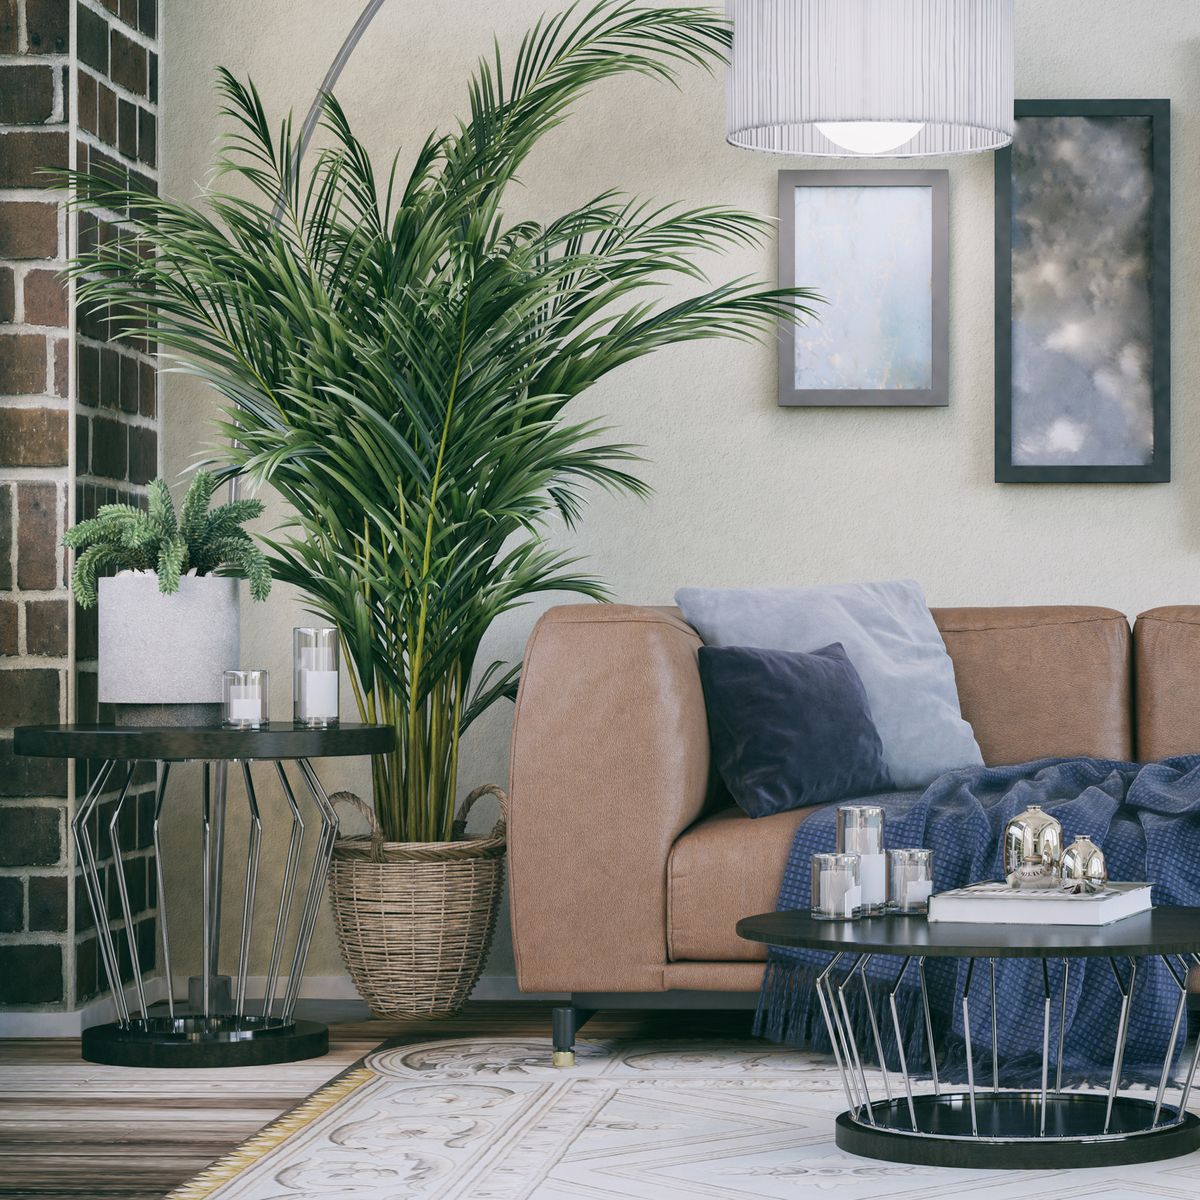 15 Best Living Room Plants - Living Room Indoor Plants To Buy Now